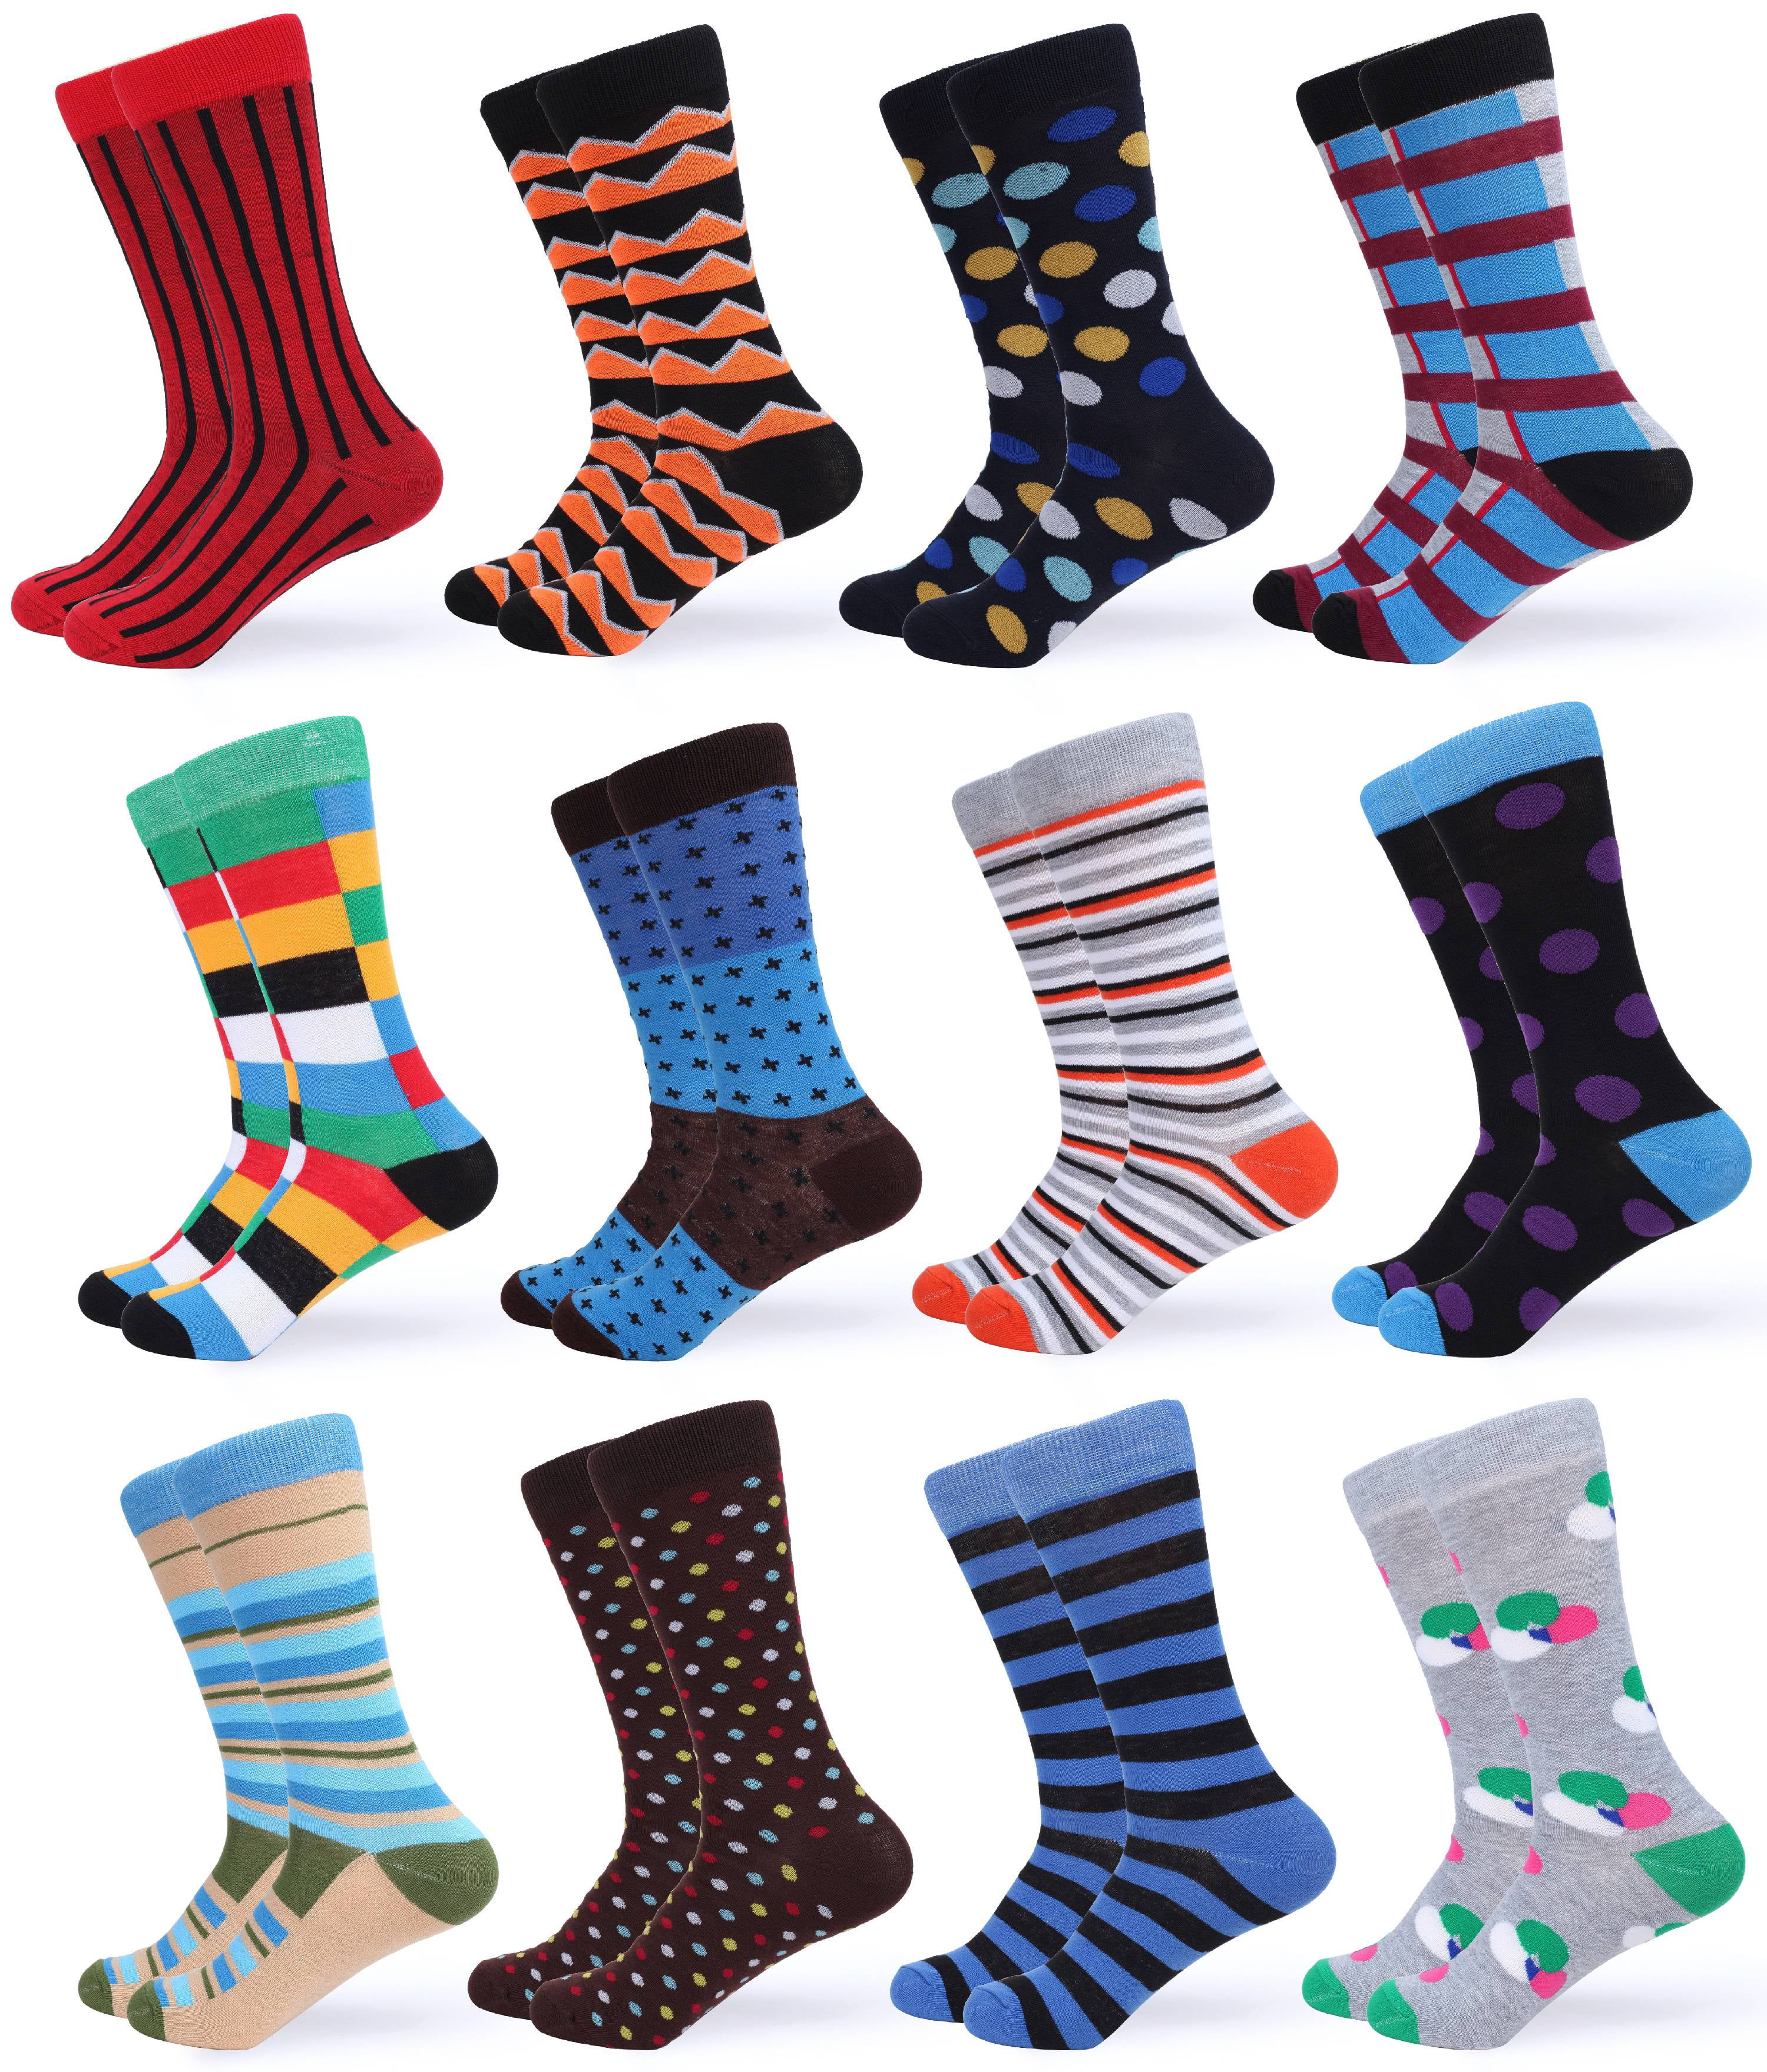 Gallery Seven Mens Dress Socks - Funky Colorful Socks for Men - 12 Pack ...